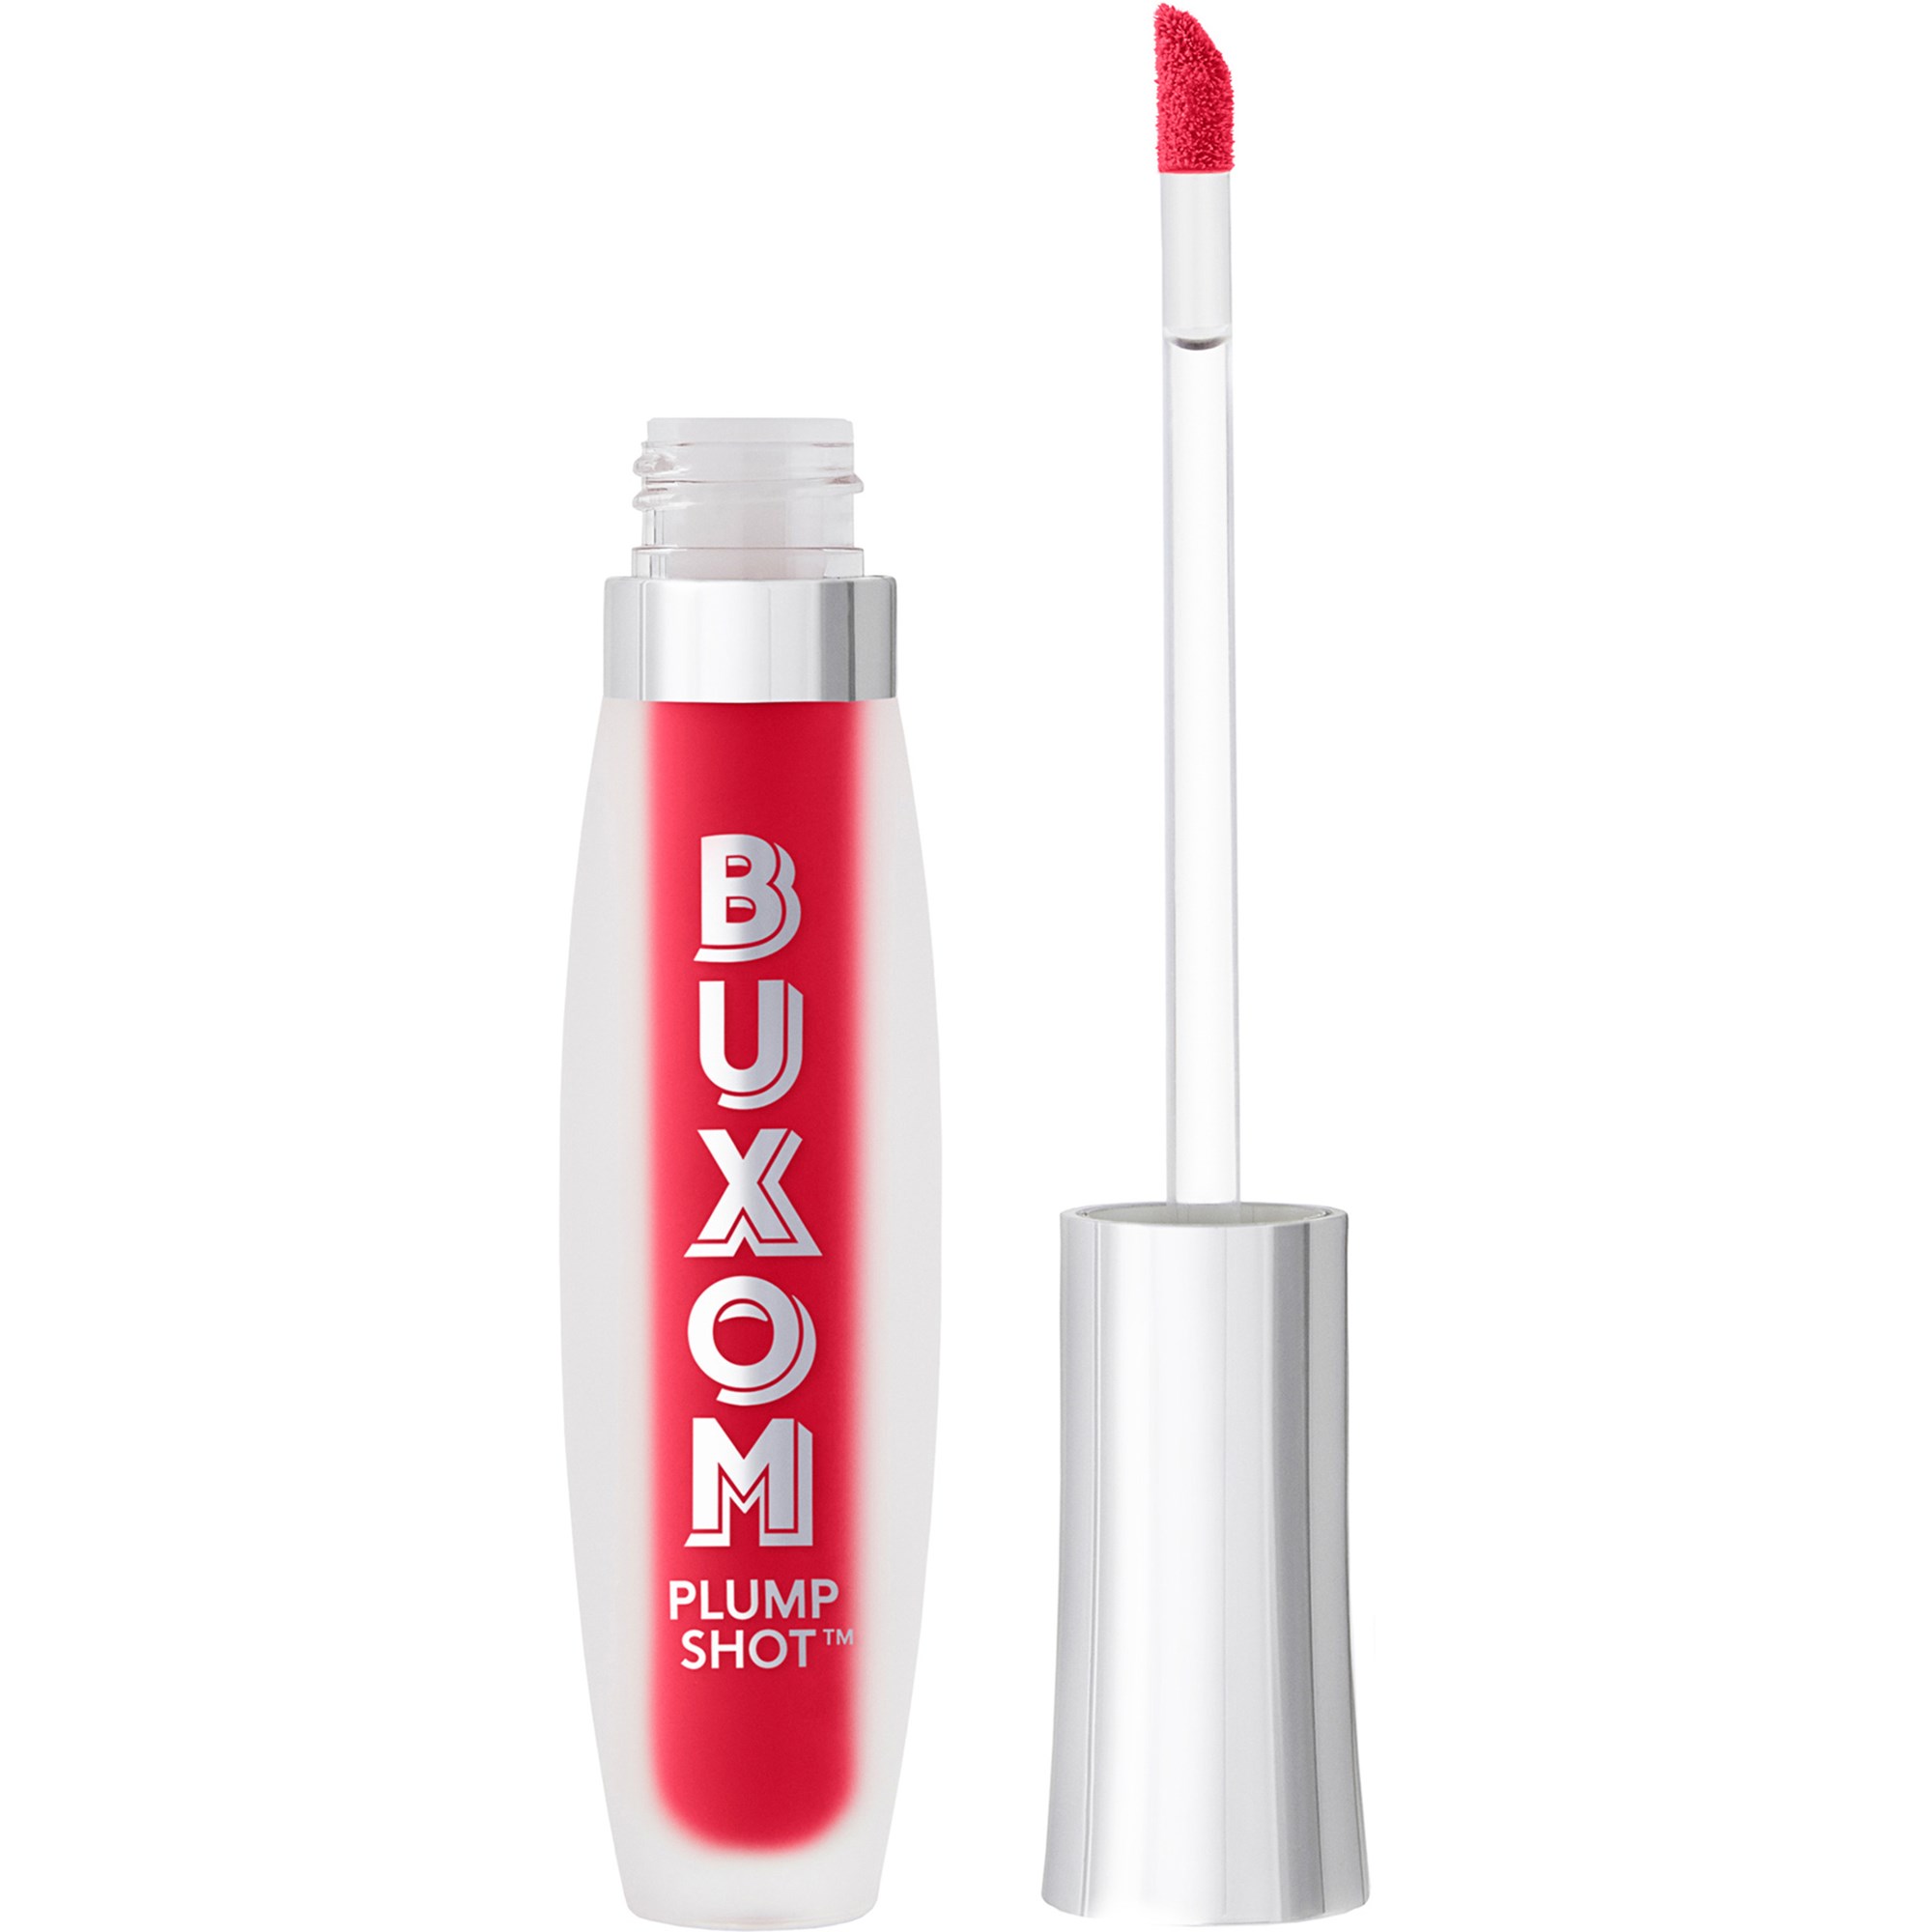 Bilde av Buxom Plump Shot™ Collagen-infused Lip Serum Cherry Pop